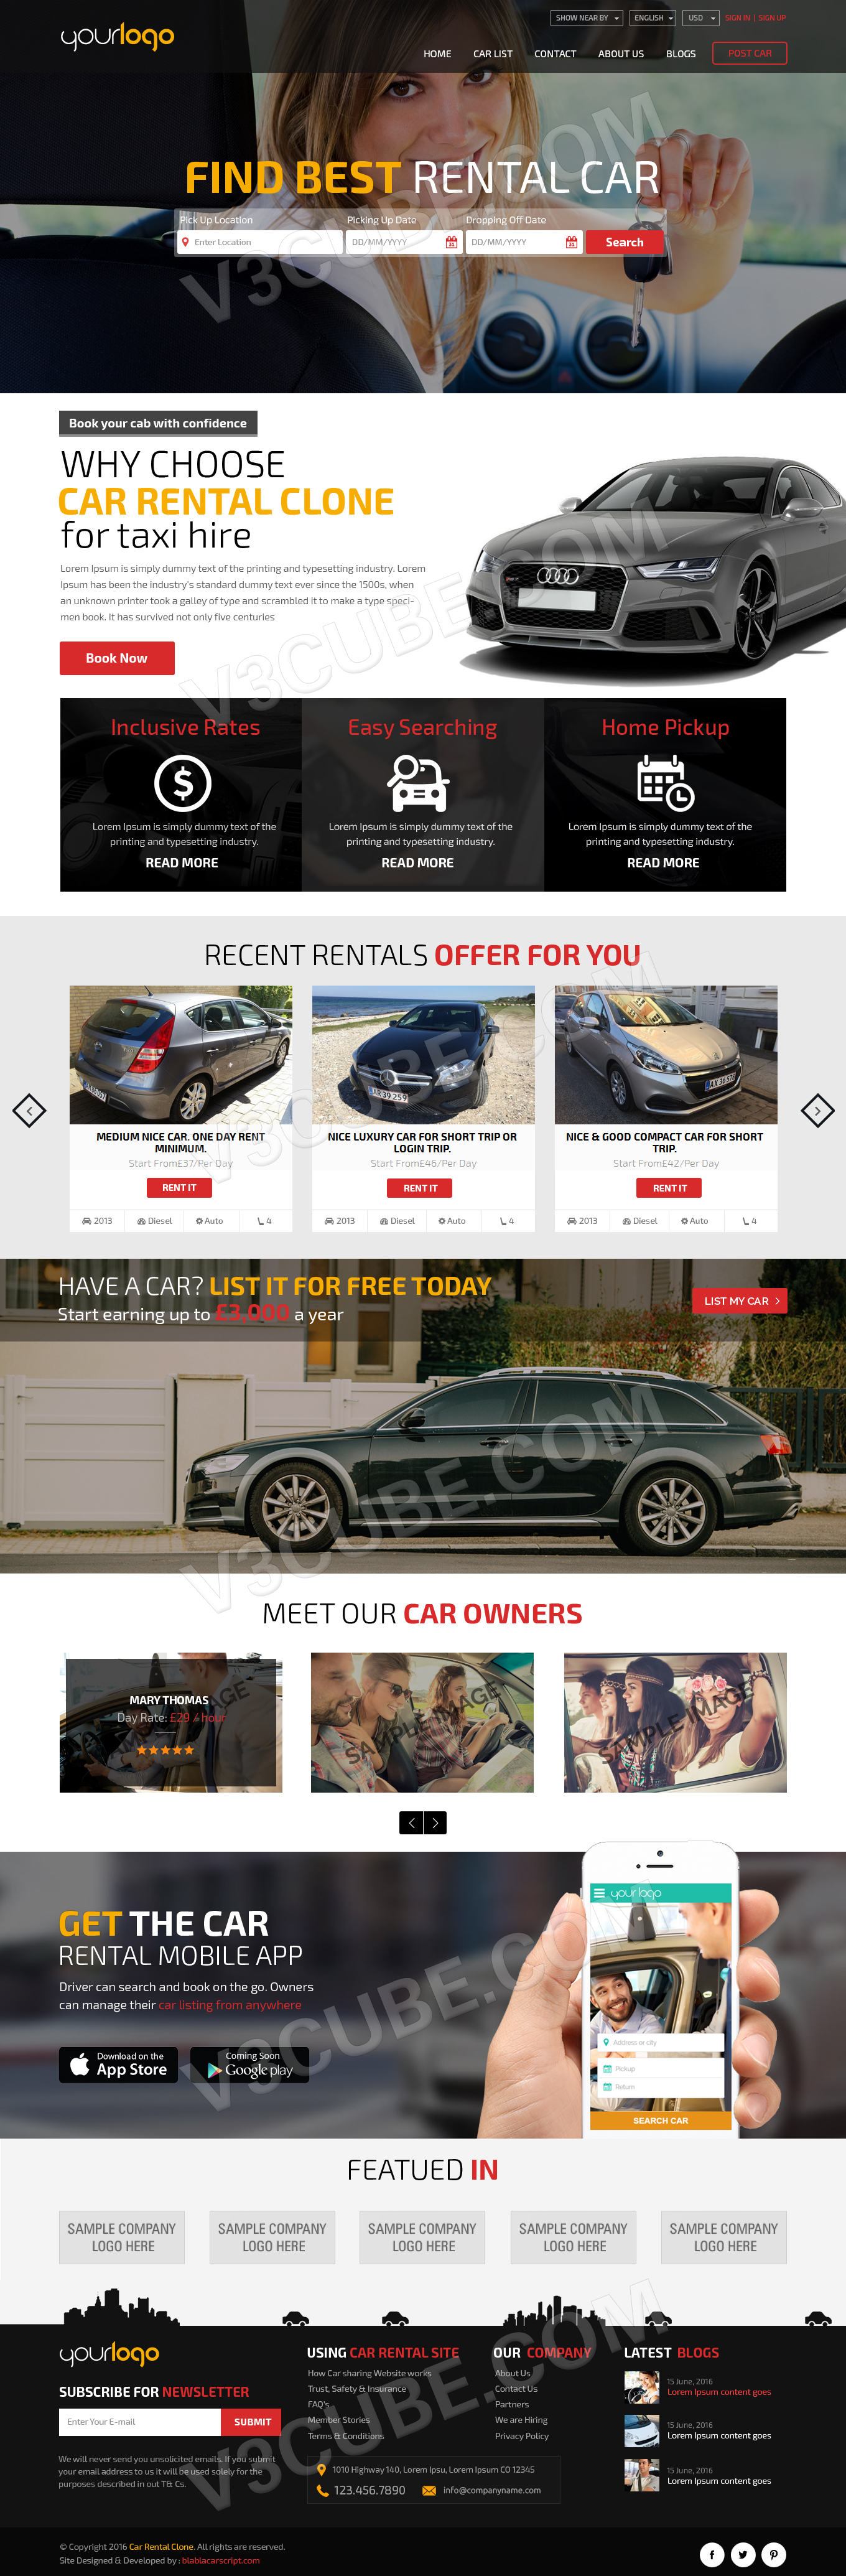 Car Rental Clone site design template